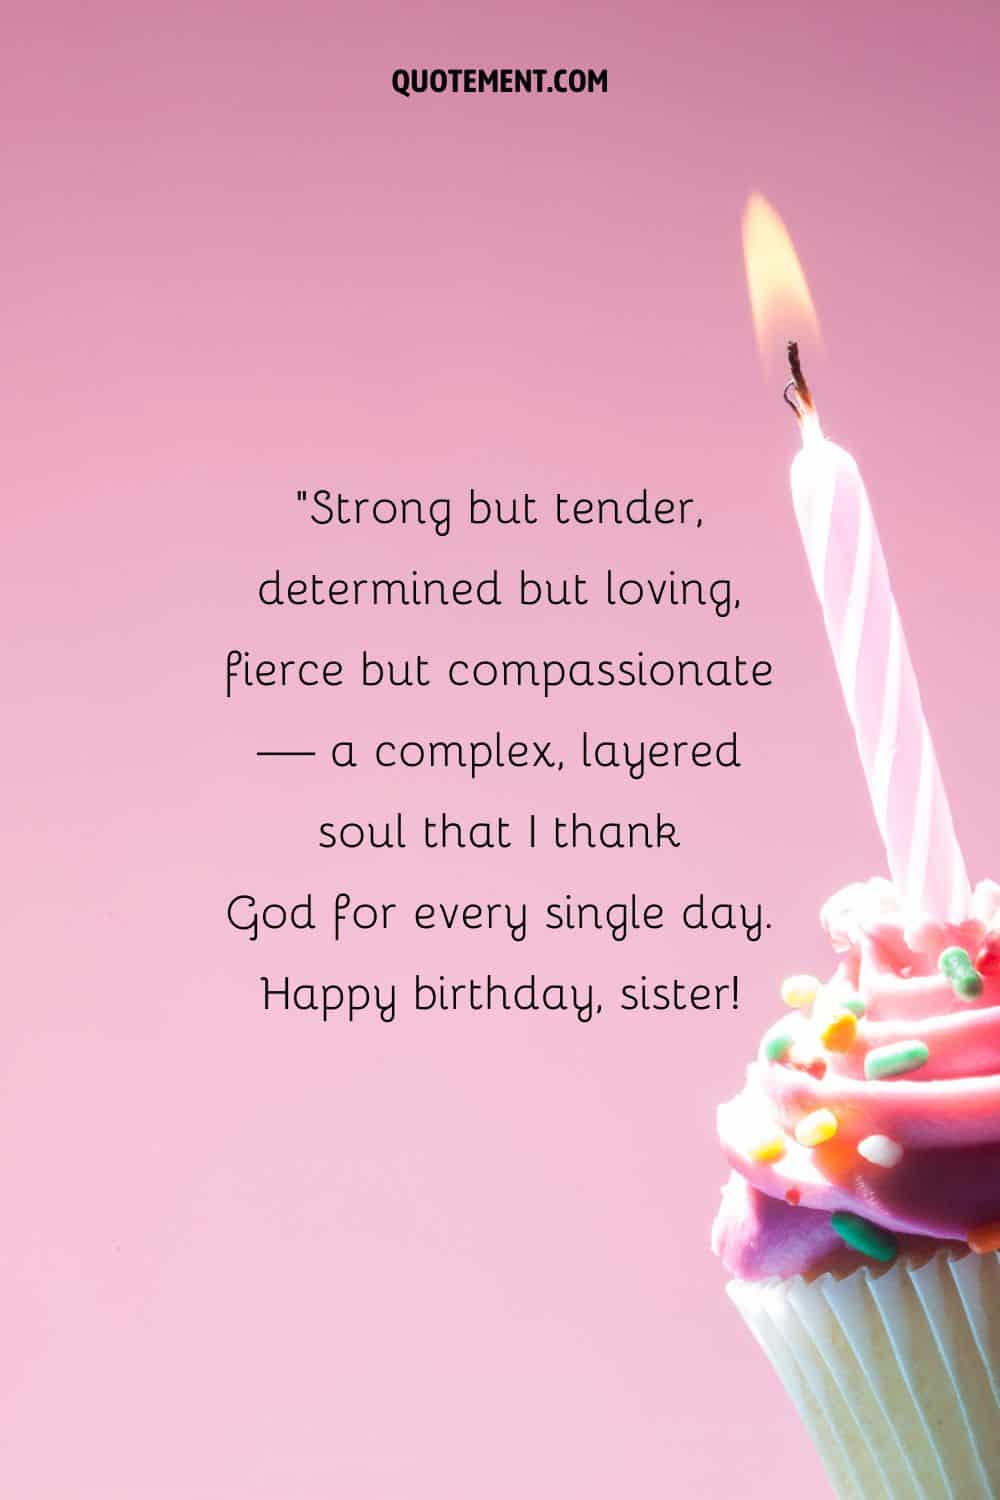 una magdalena con una vela que representa un deseo de feliz cumpleaños para la hermana